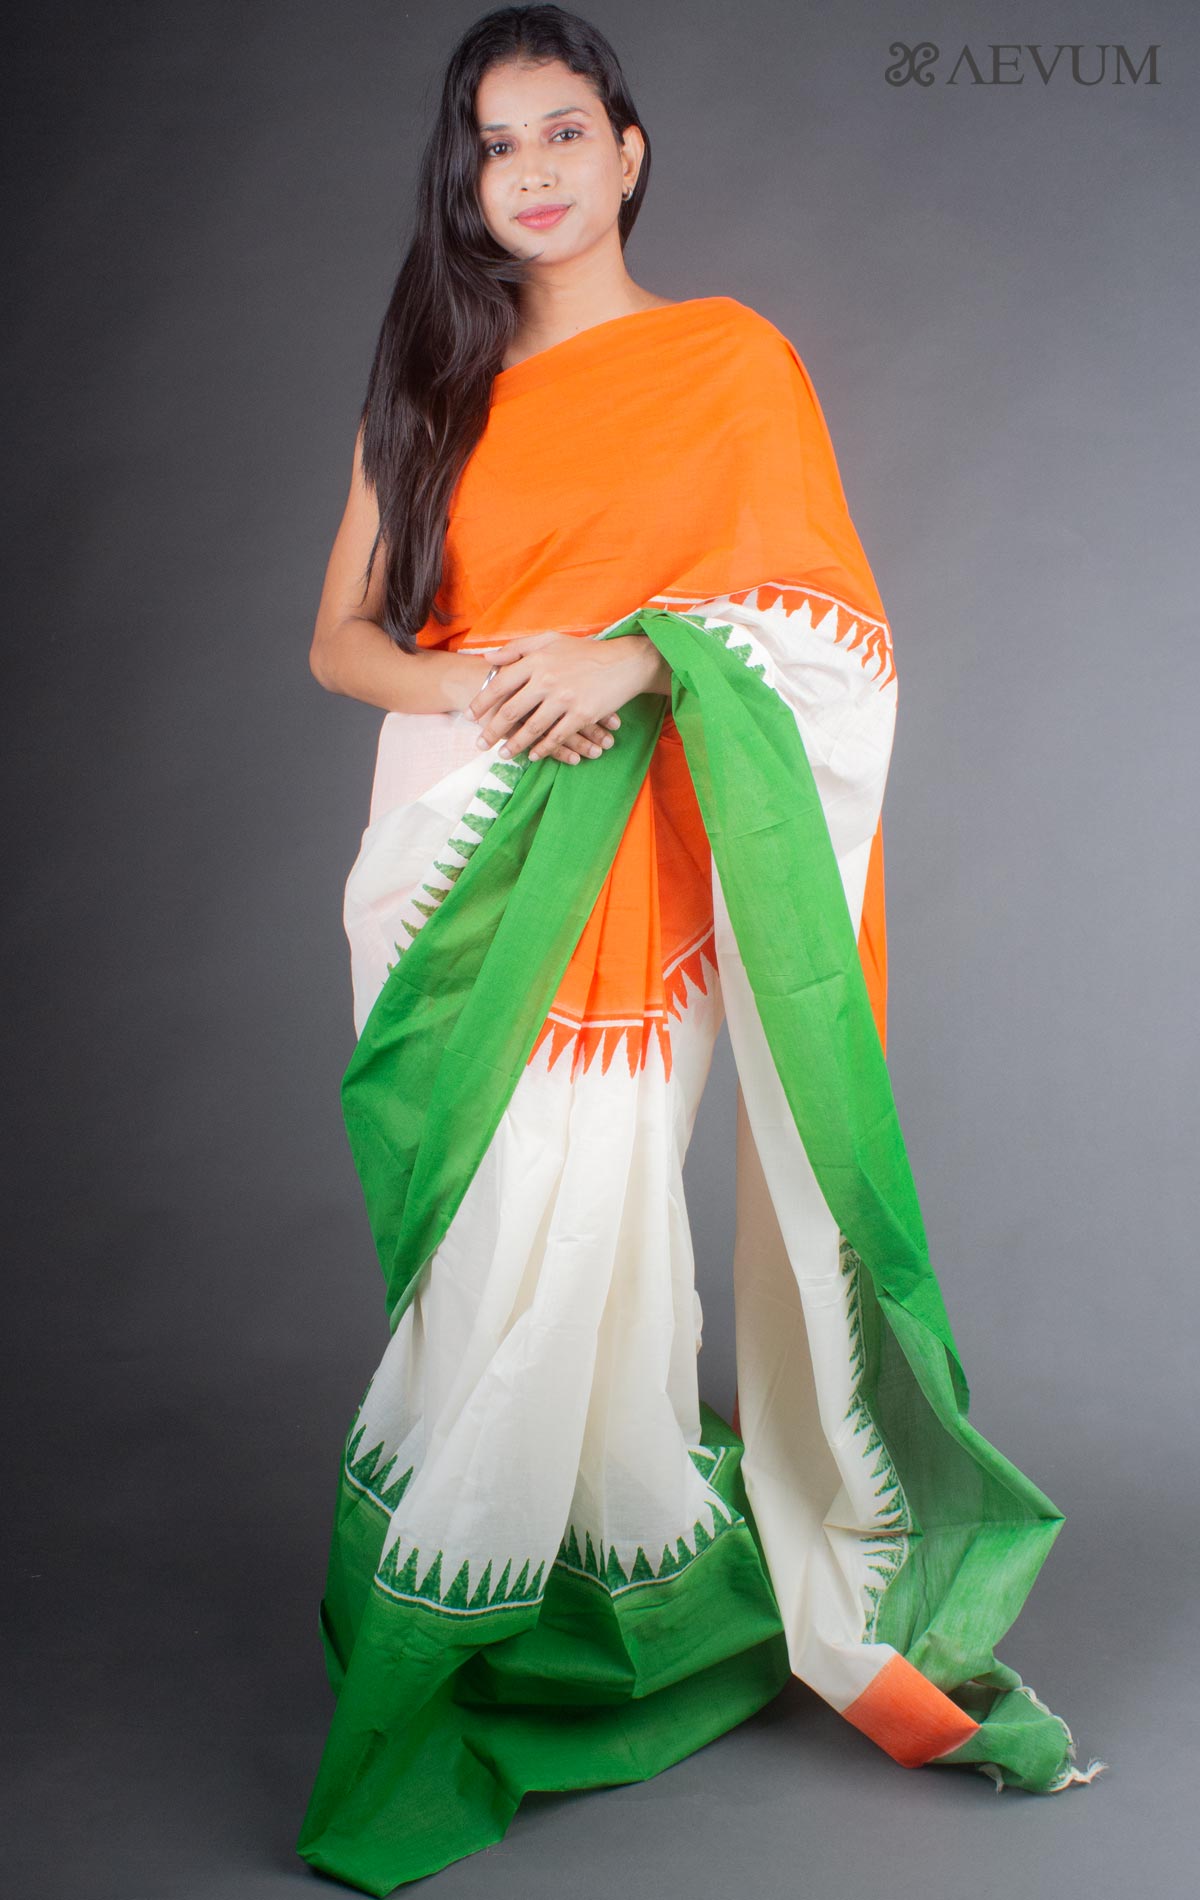 Wendell Rodricks ka sari gown | Fashion, Indian fashion, Long dress fashion